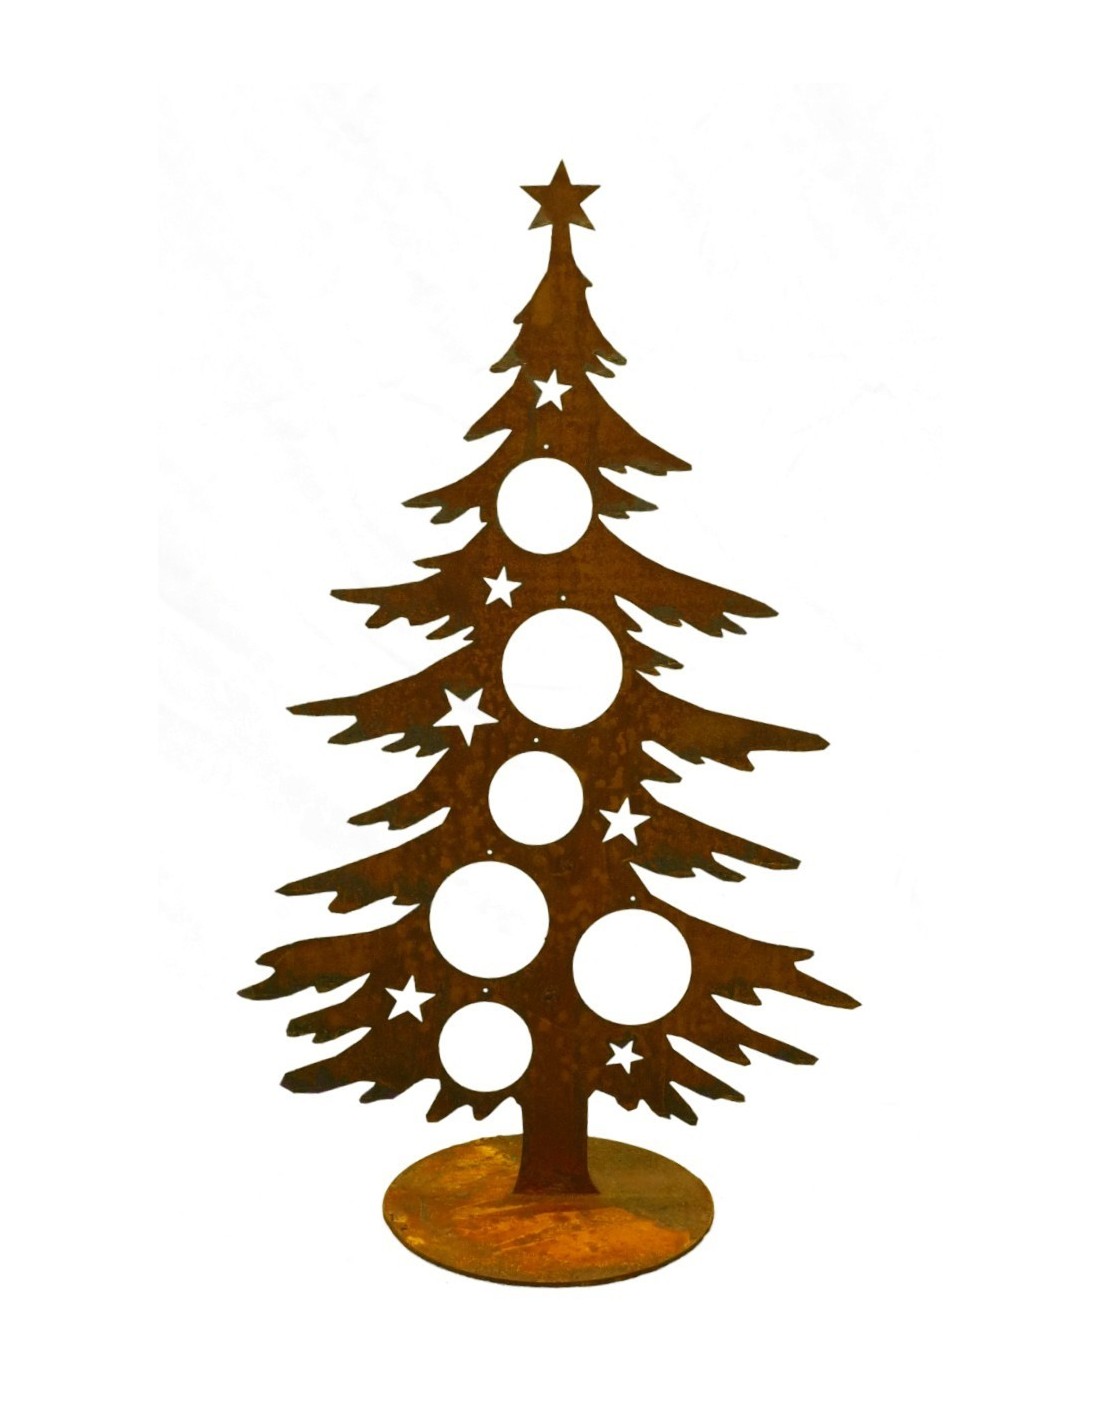 Metall Deko Weihnachtsbaum 76 cm Christbaum Kugel Halter Tannenbaum mit Stern 